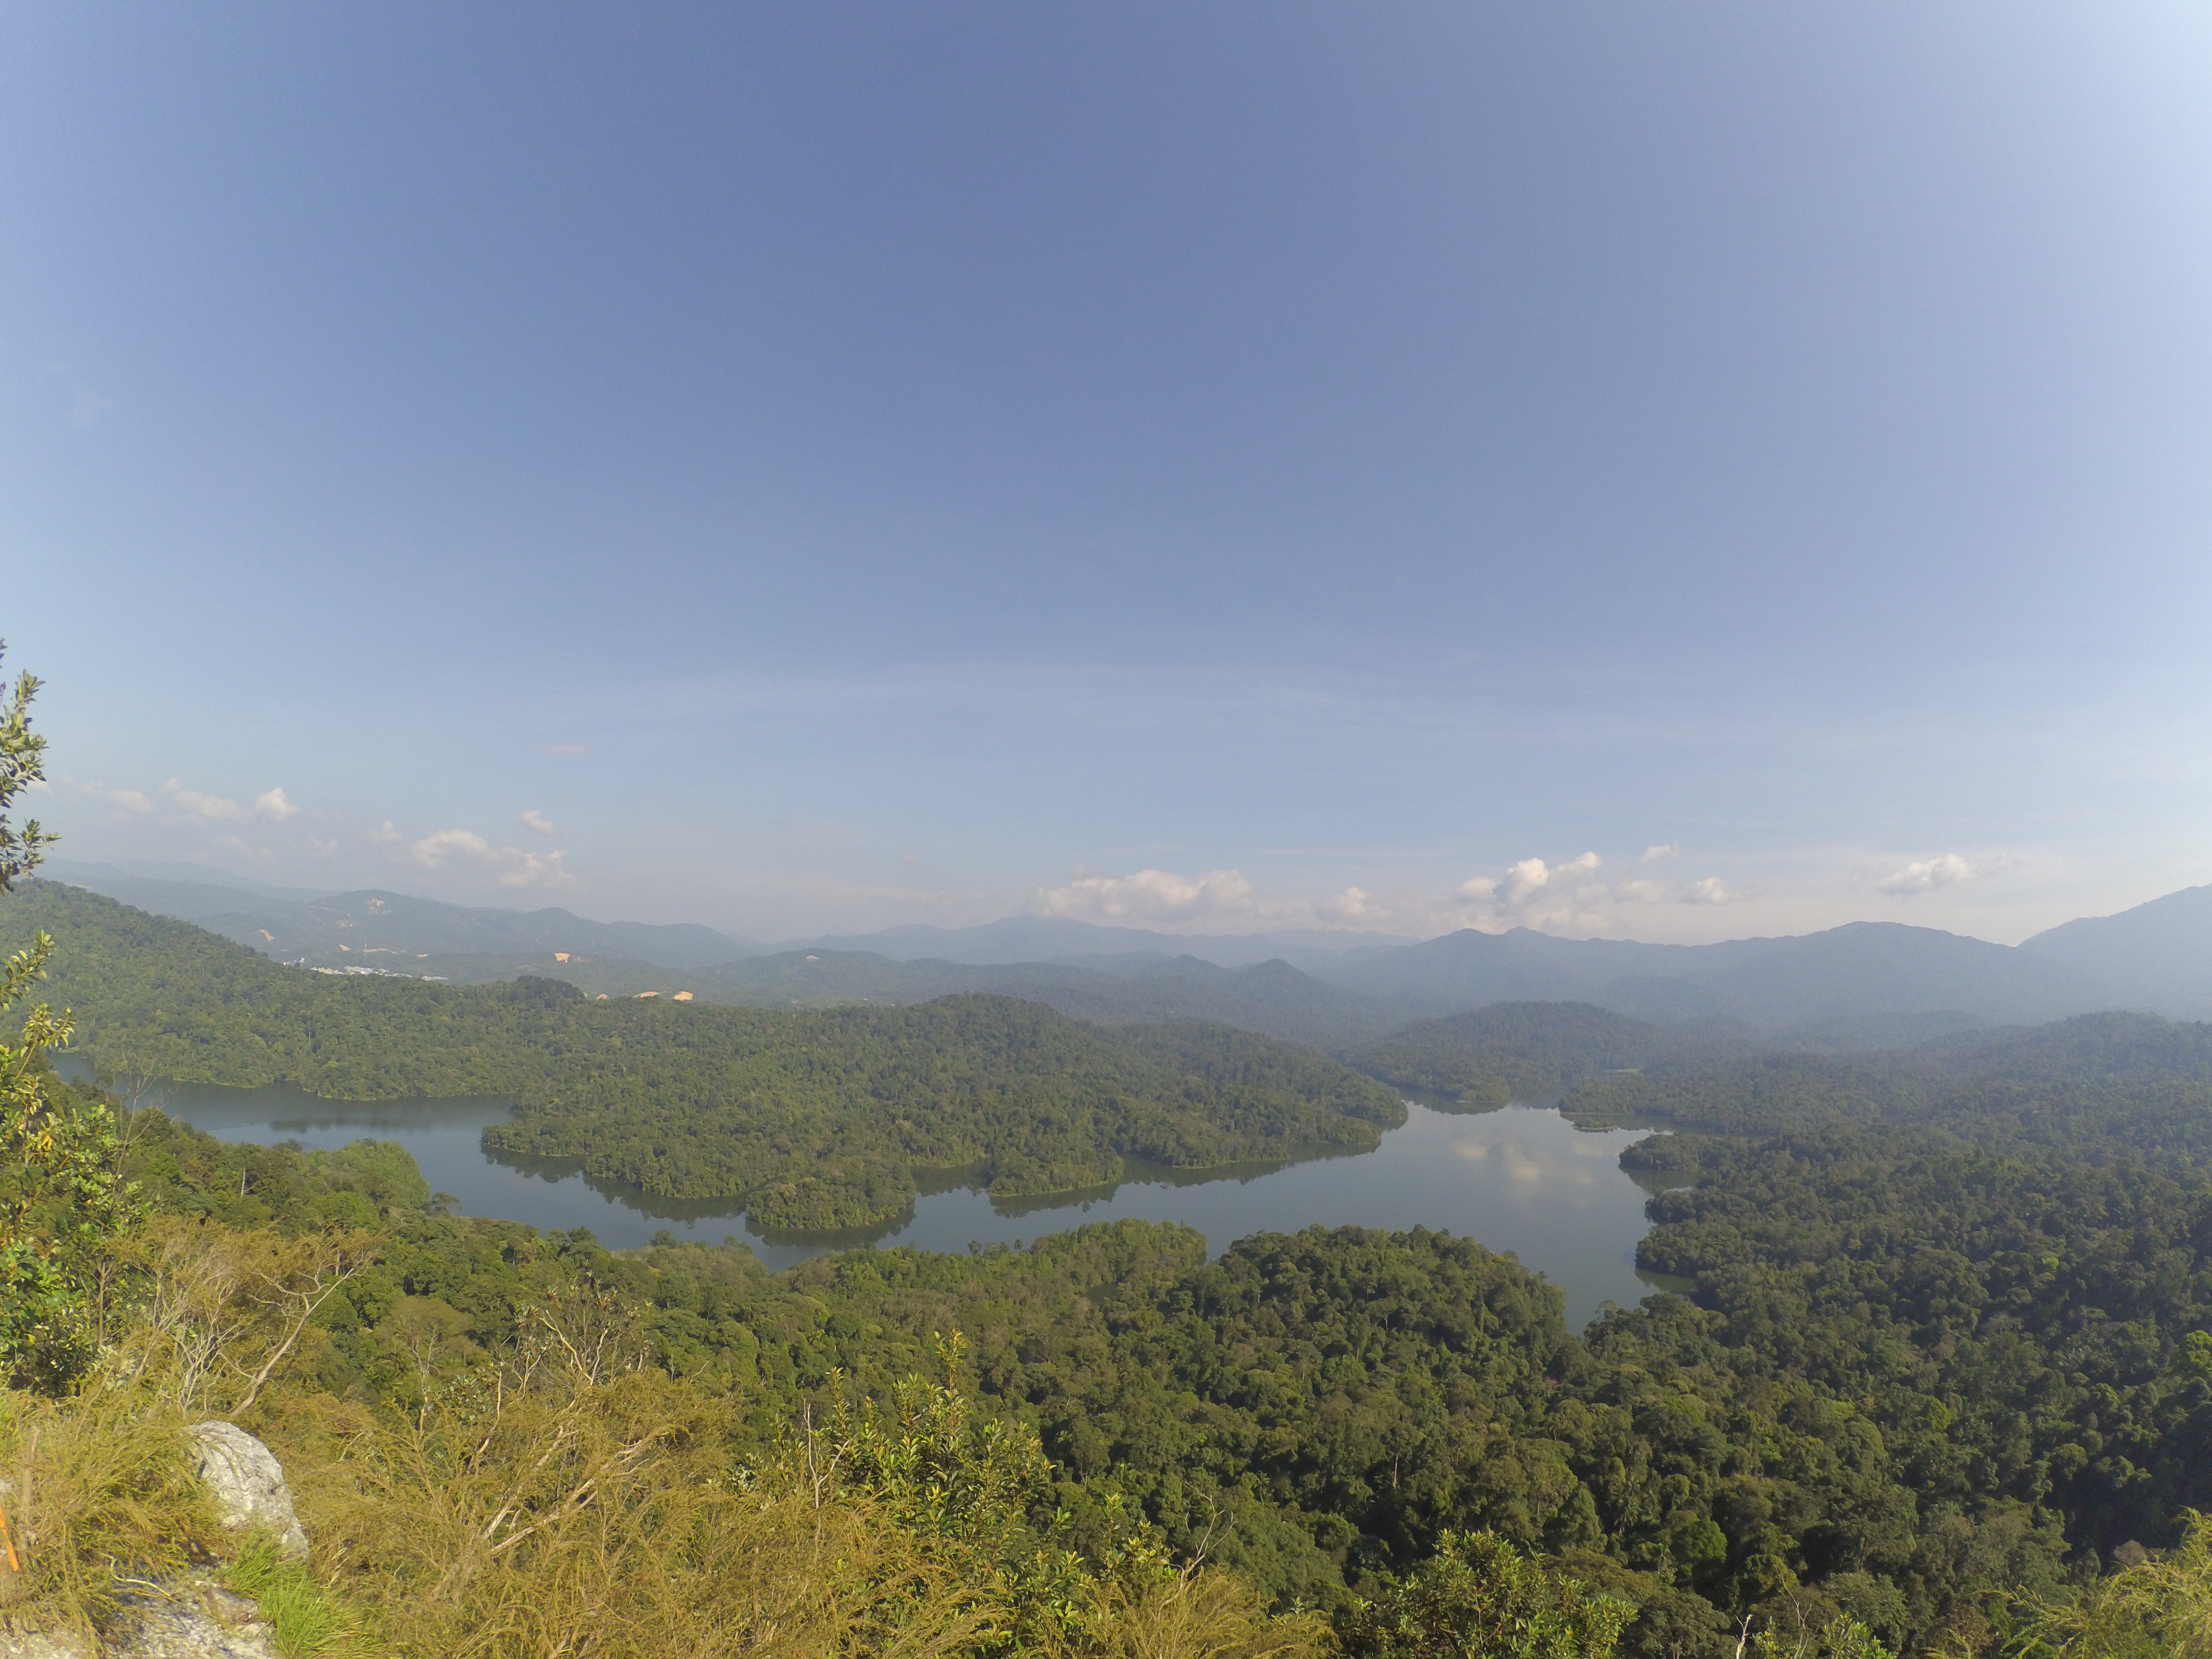 Скачать обои бесплатно Пейзаж, Река, Лес, Малайзия, Земля/природа картинка на рабочий стол ПК